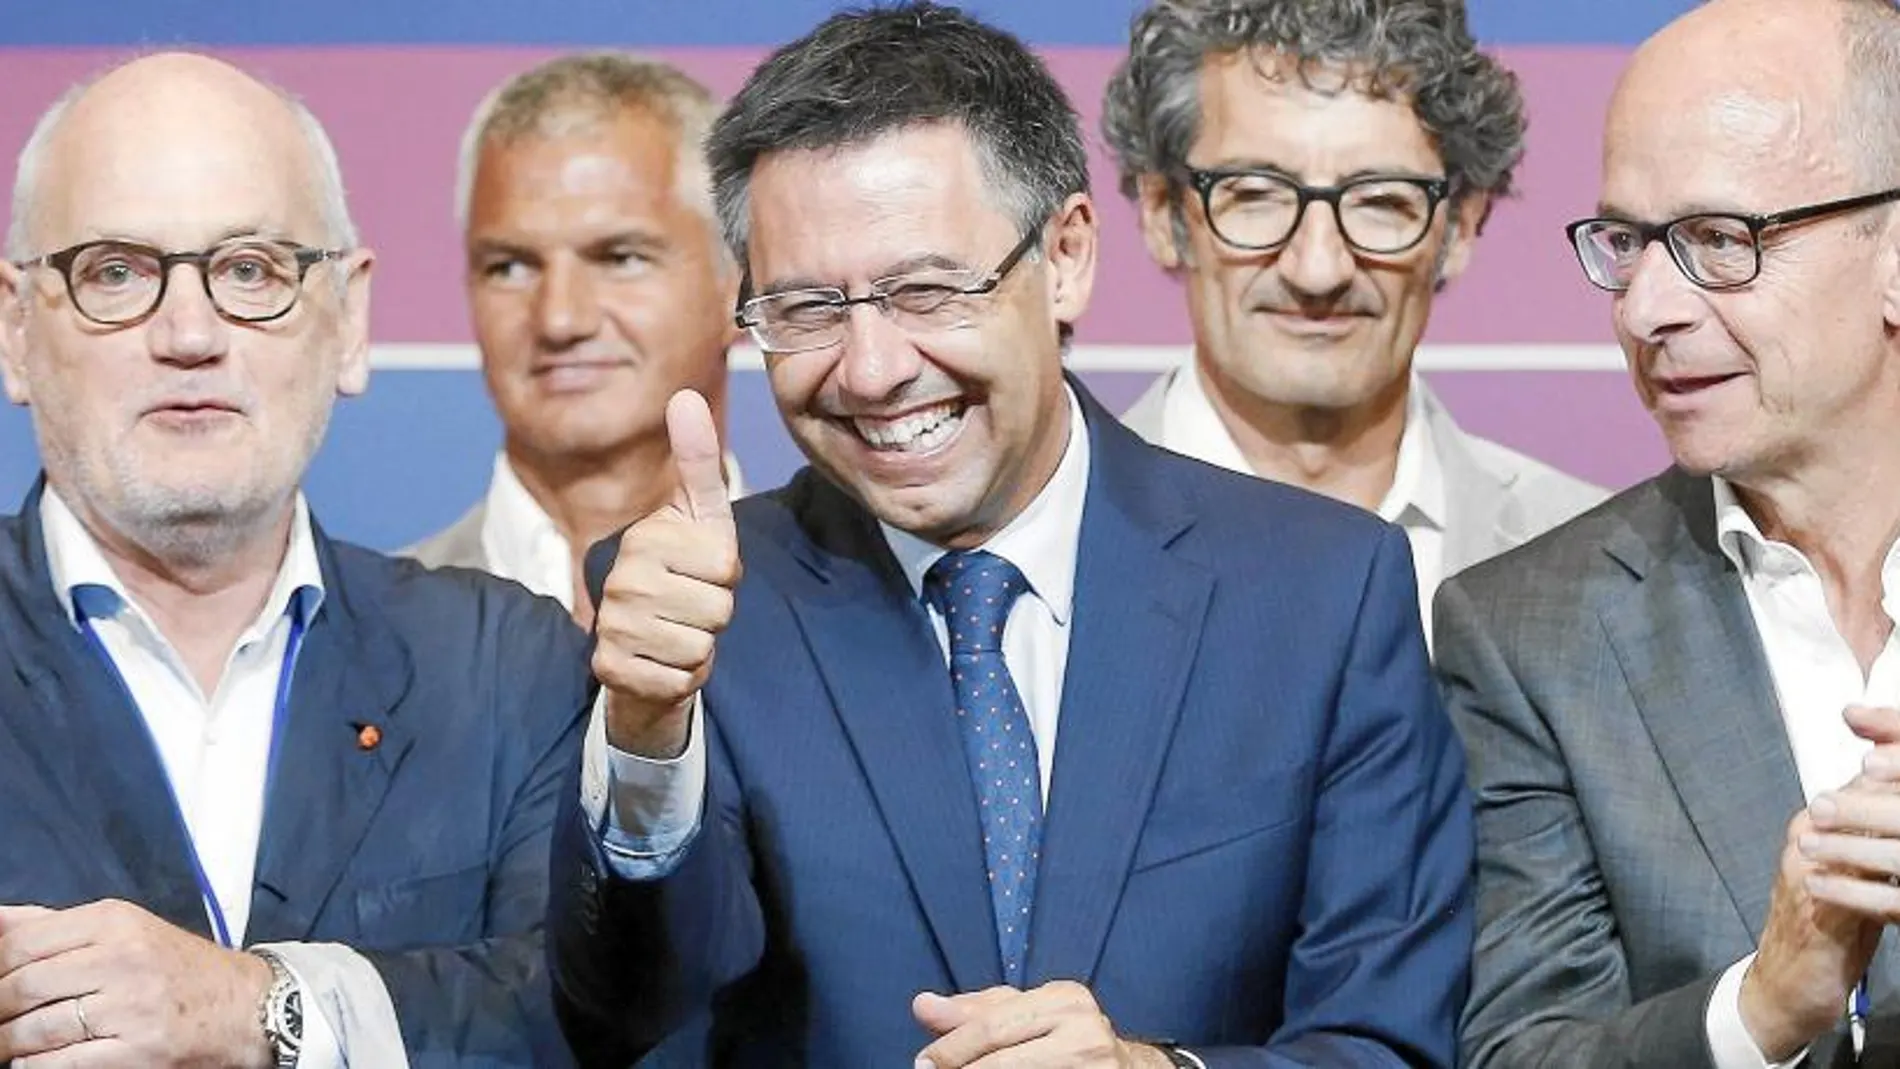 Bartomeu fue el claro ganador de las elecciones. Será presidente del Barcelona los próximos seis años